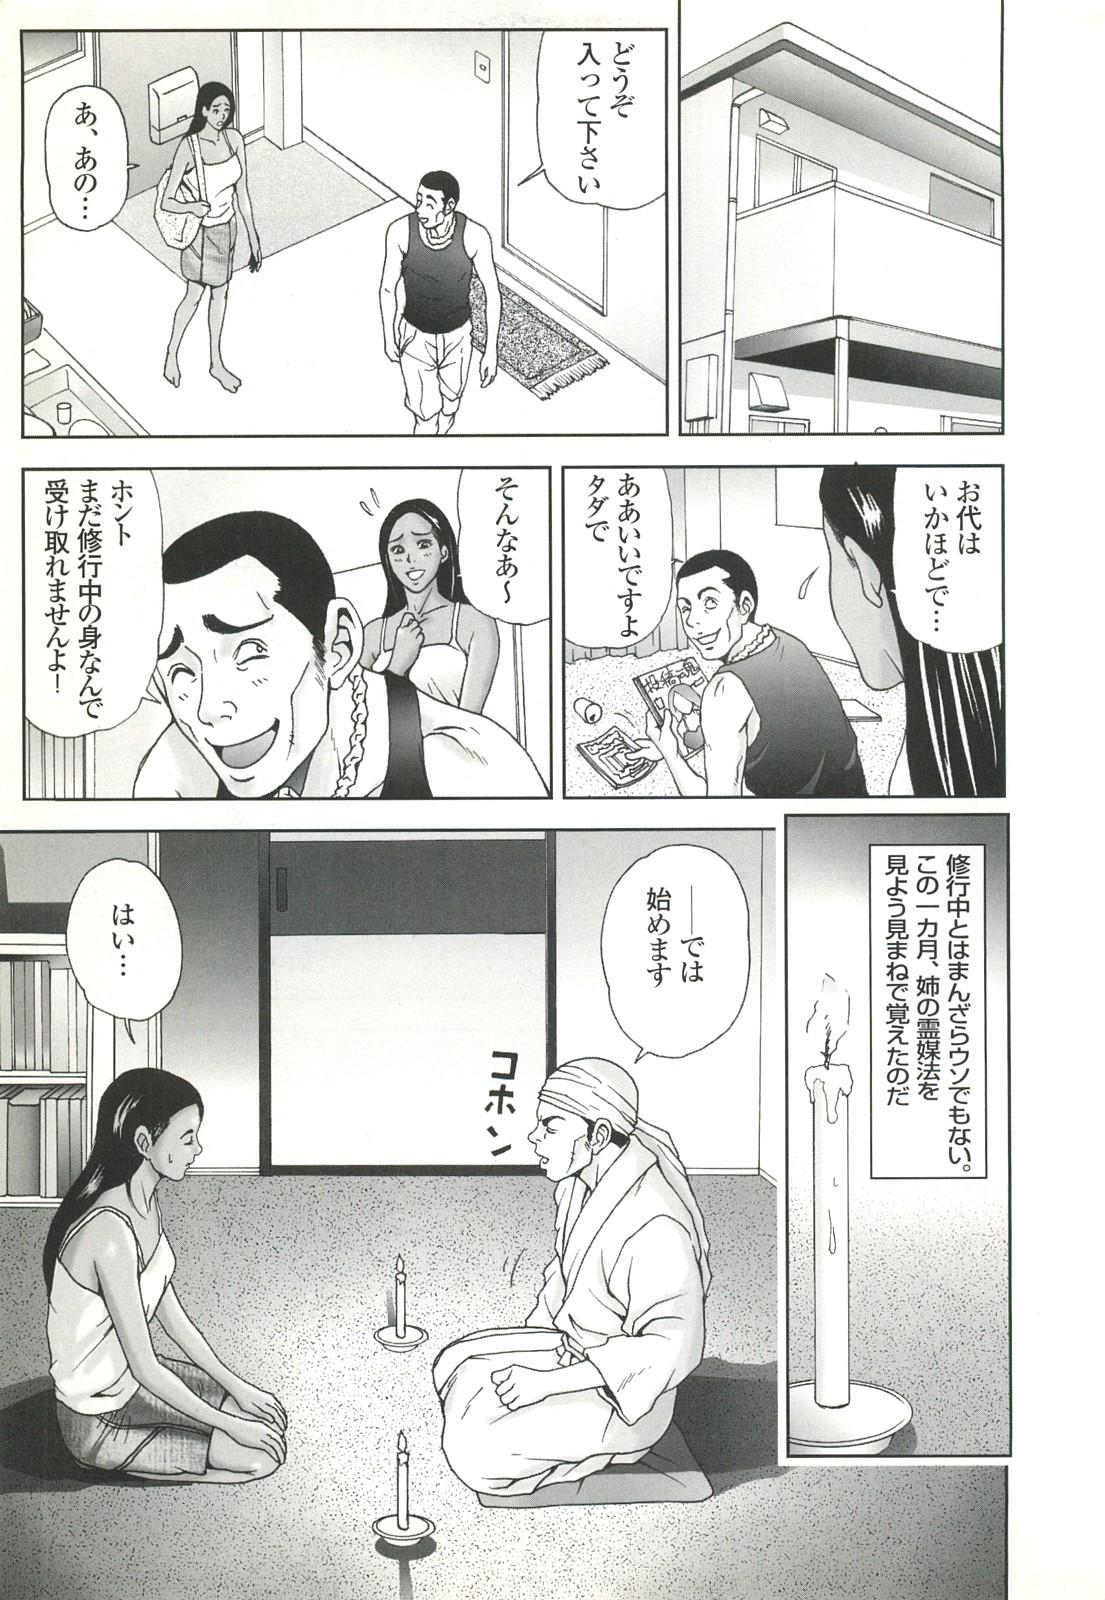 コミック裏モノJAPAN Vol.18 今井のりたつスペシャル号 50